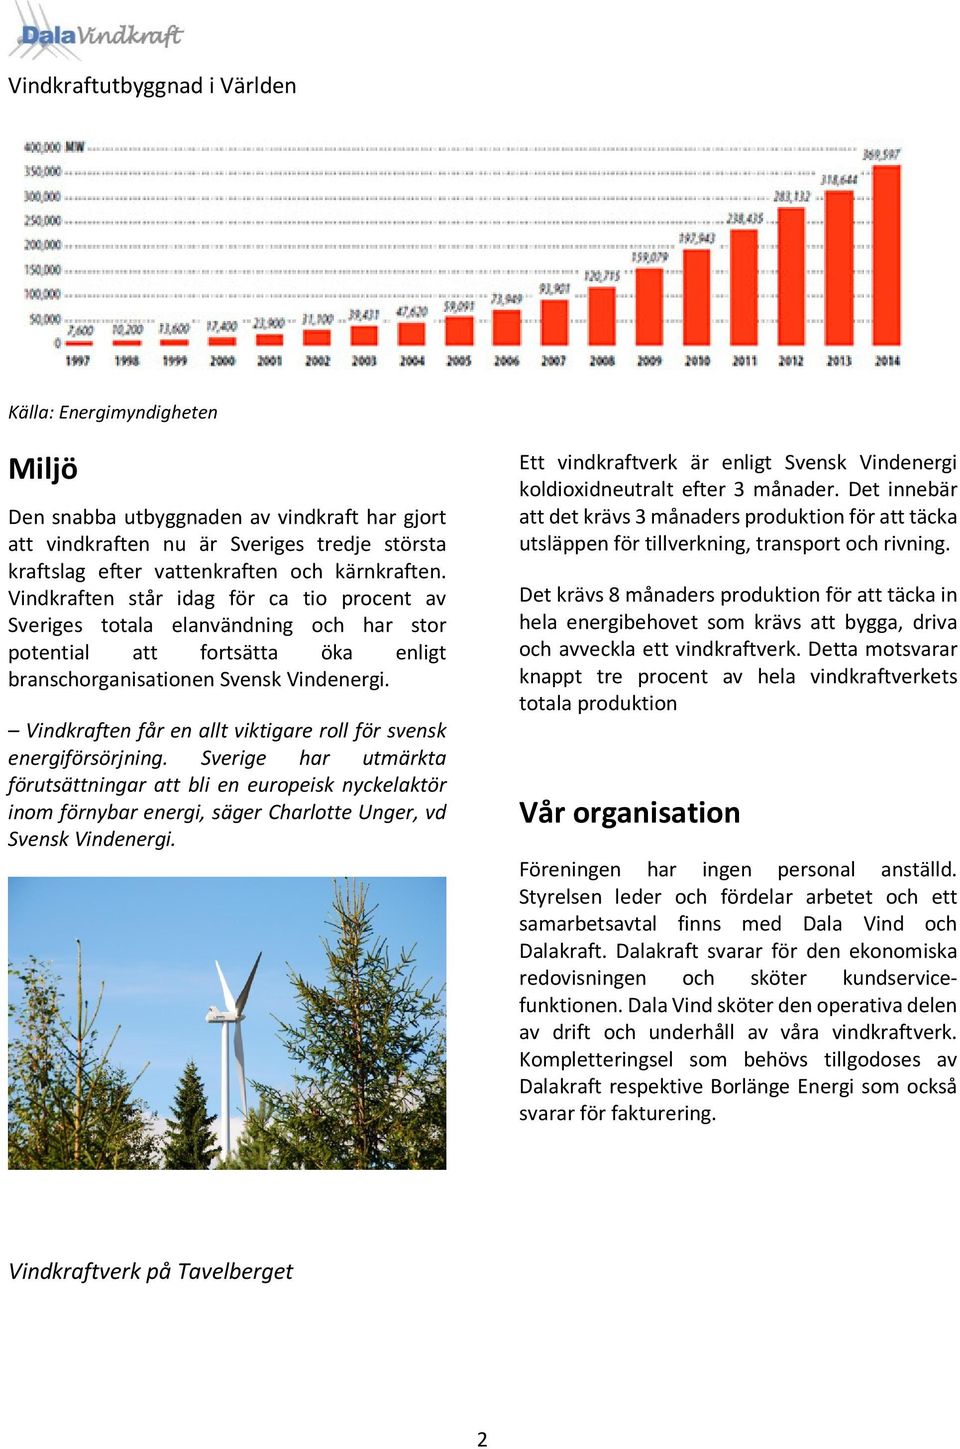 Vindkraften får en allt viktigare roll för svensk energiförsörjning.